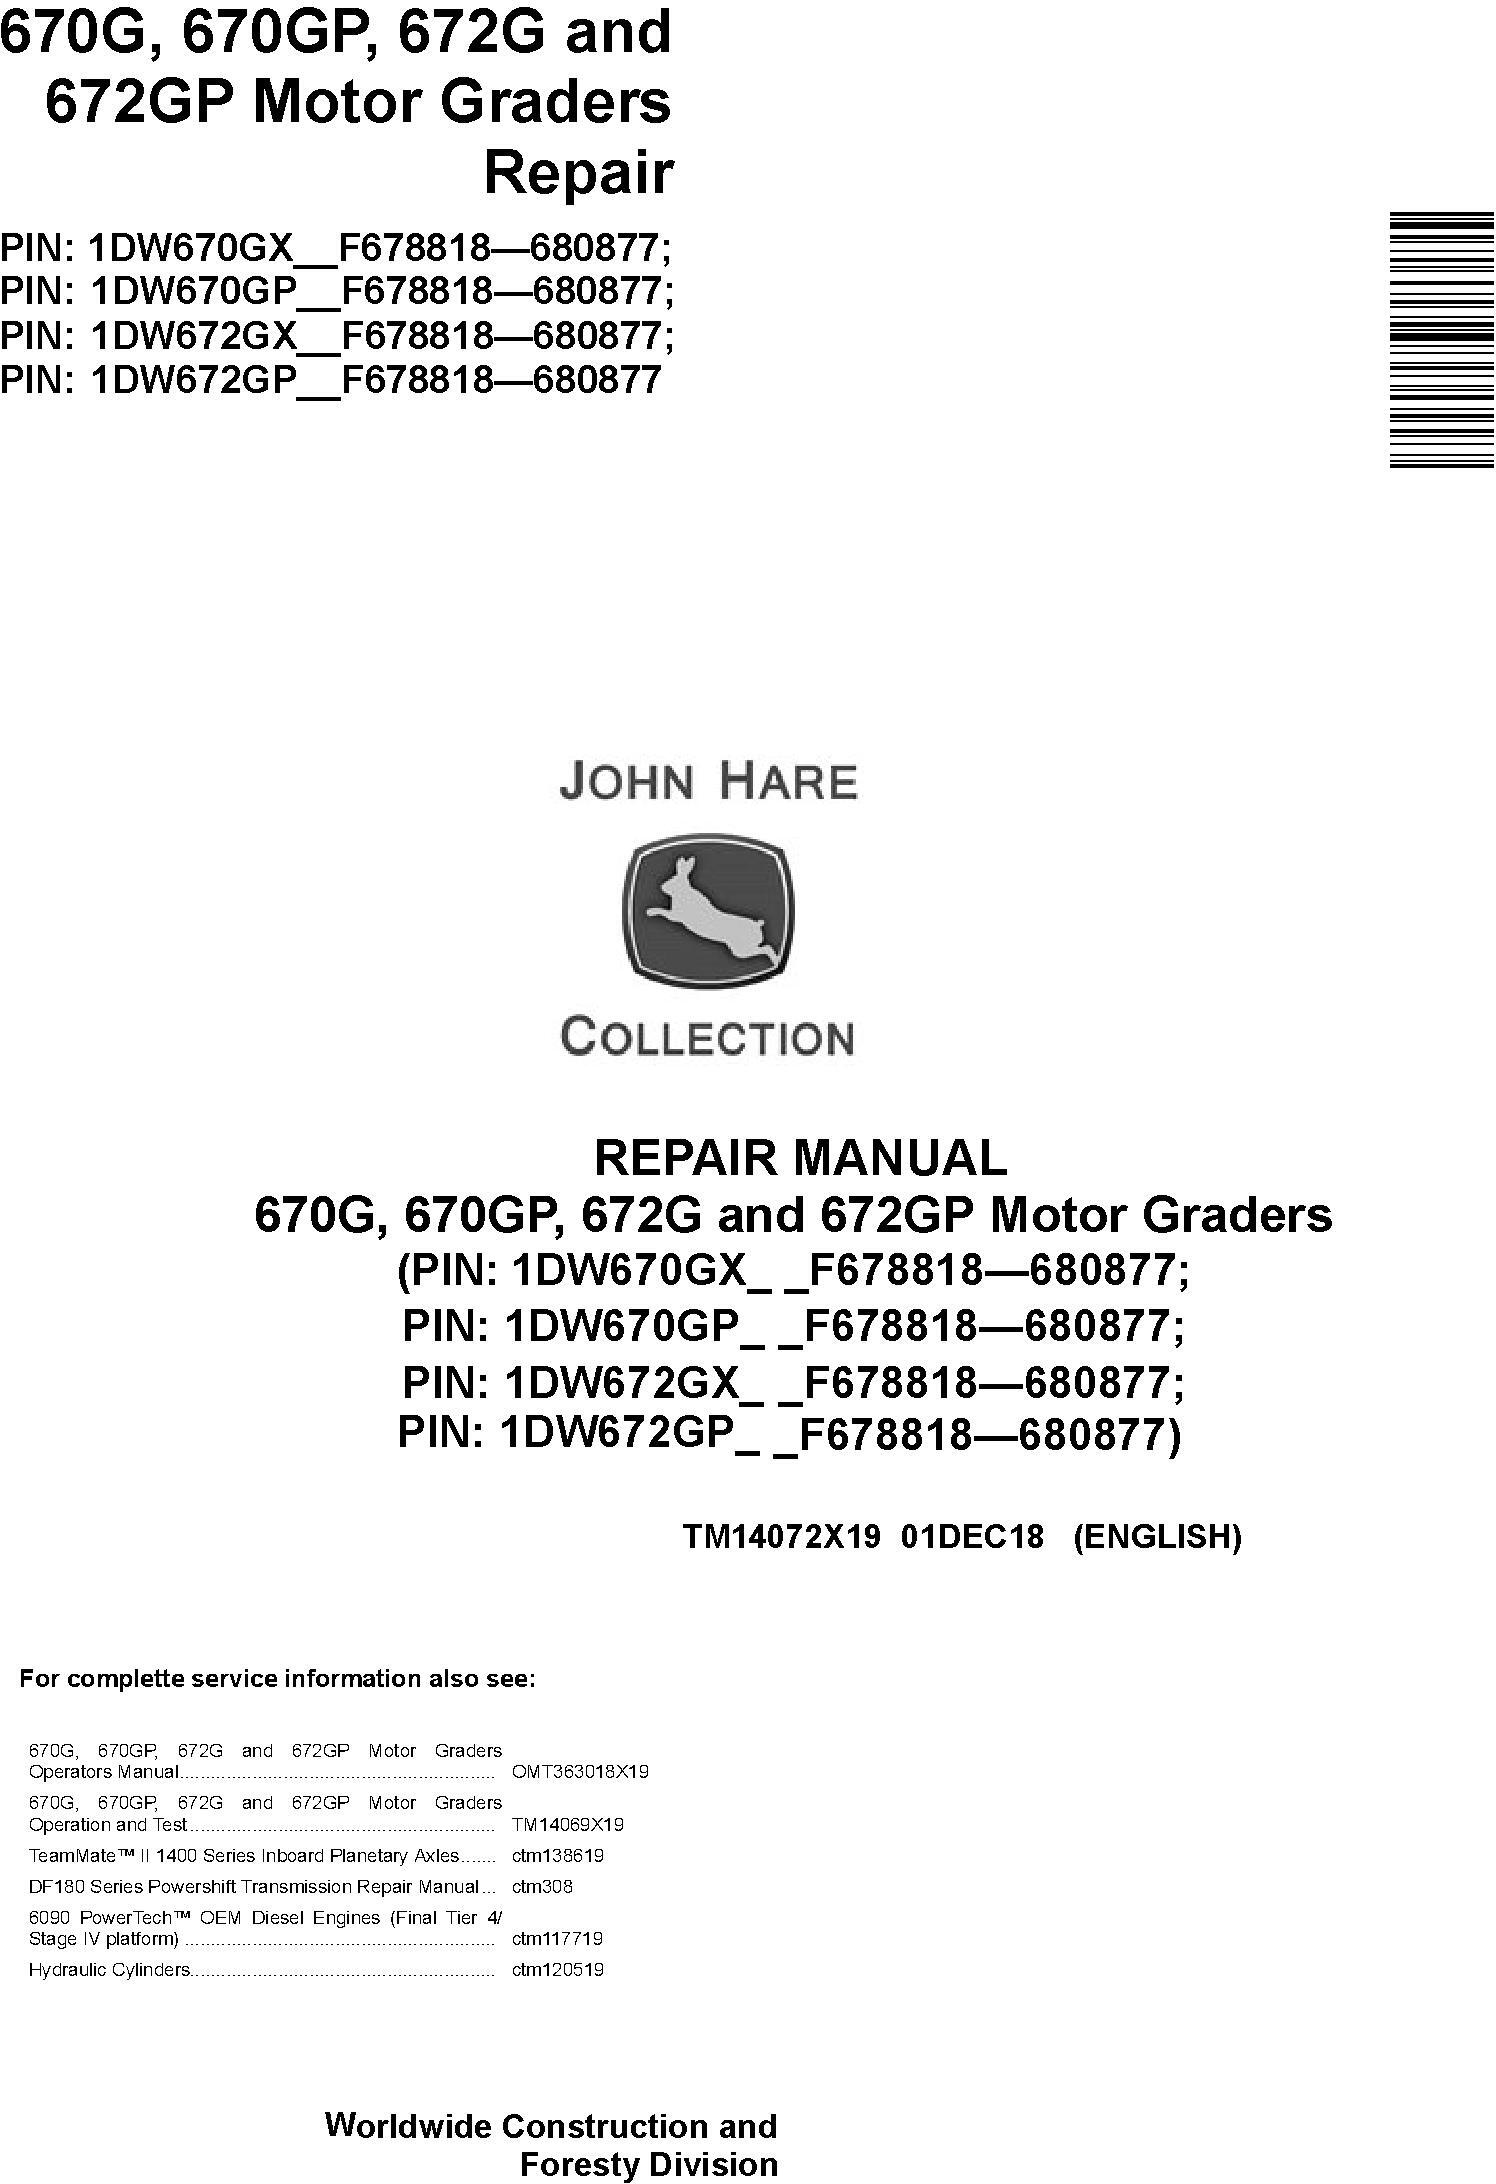 John Deere 670G, 670GP, 672G, 672GP (SN.F678818-680877) Motor Graders Repair Manual (TM14072X19) - 18993